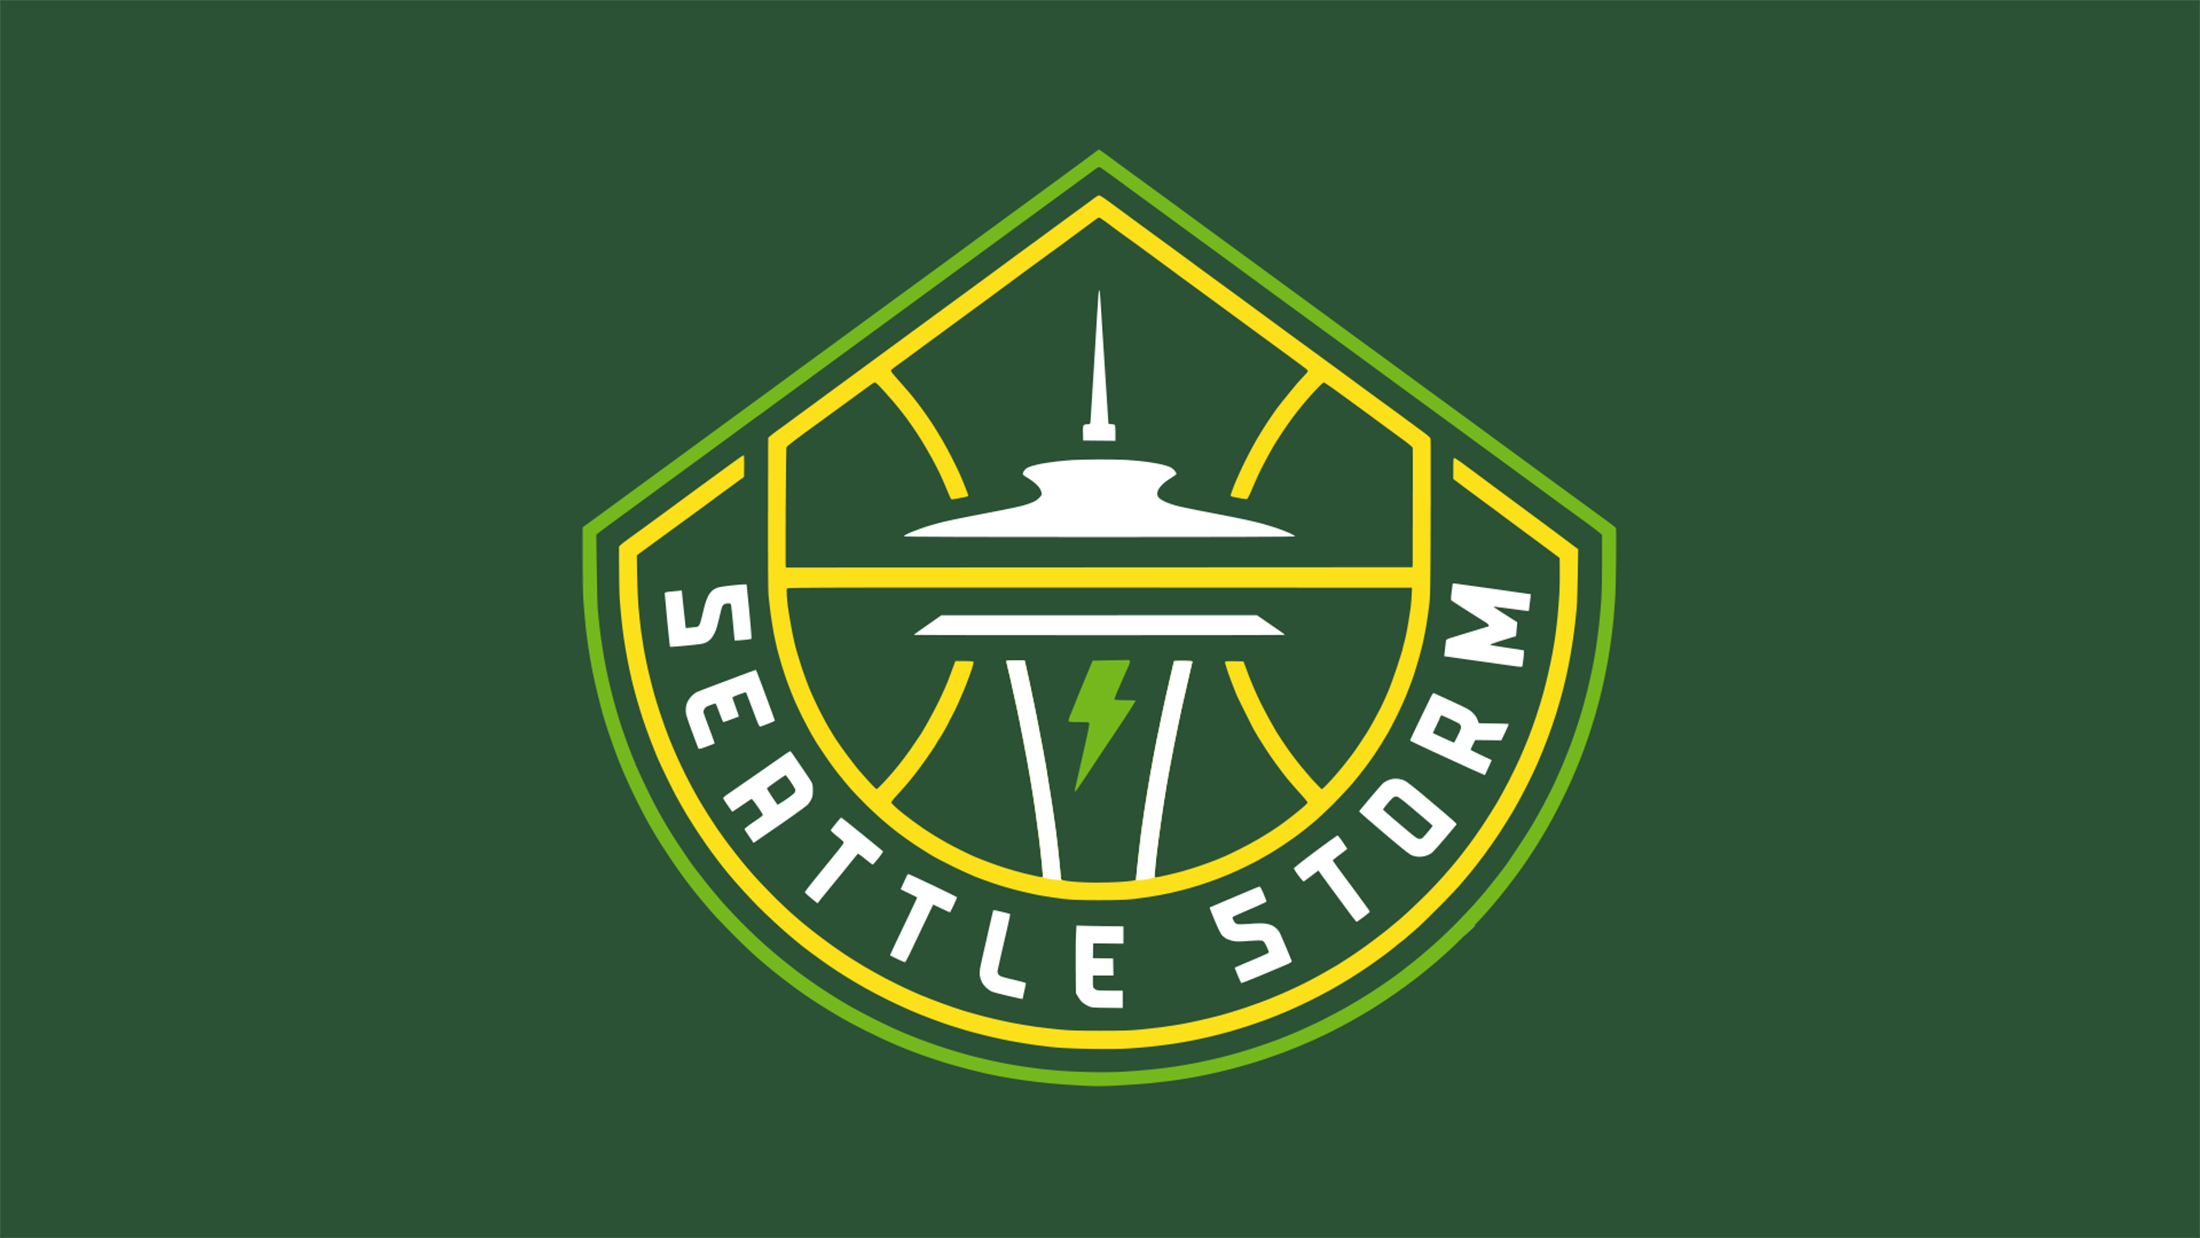 Seattle Storm vs. Las Vegas Aces